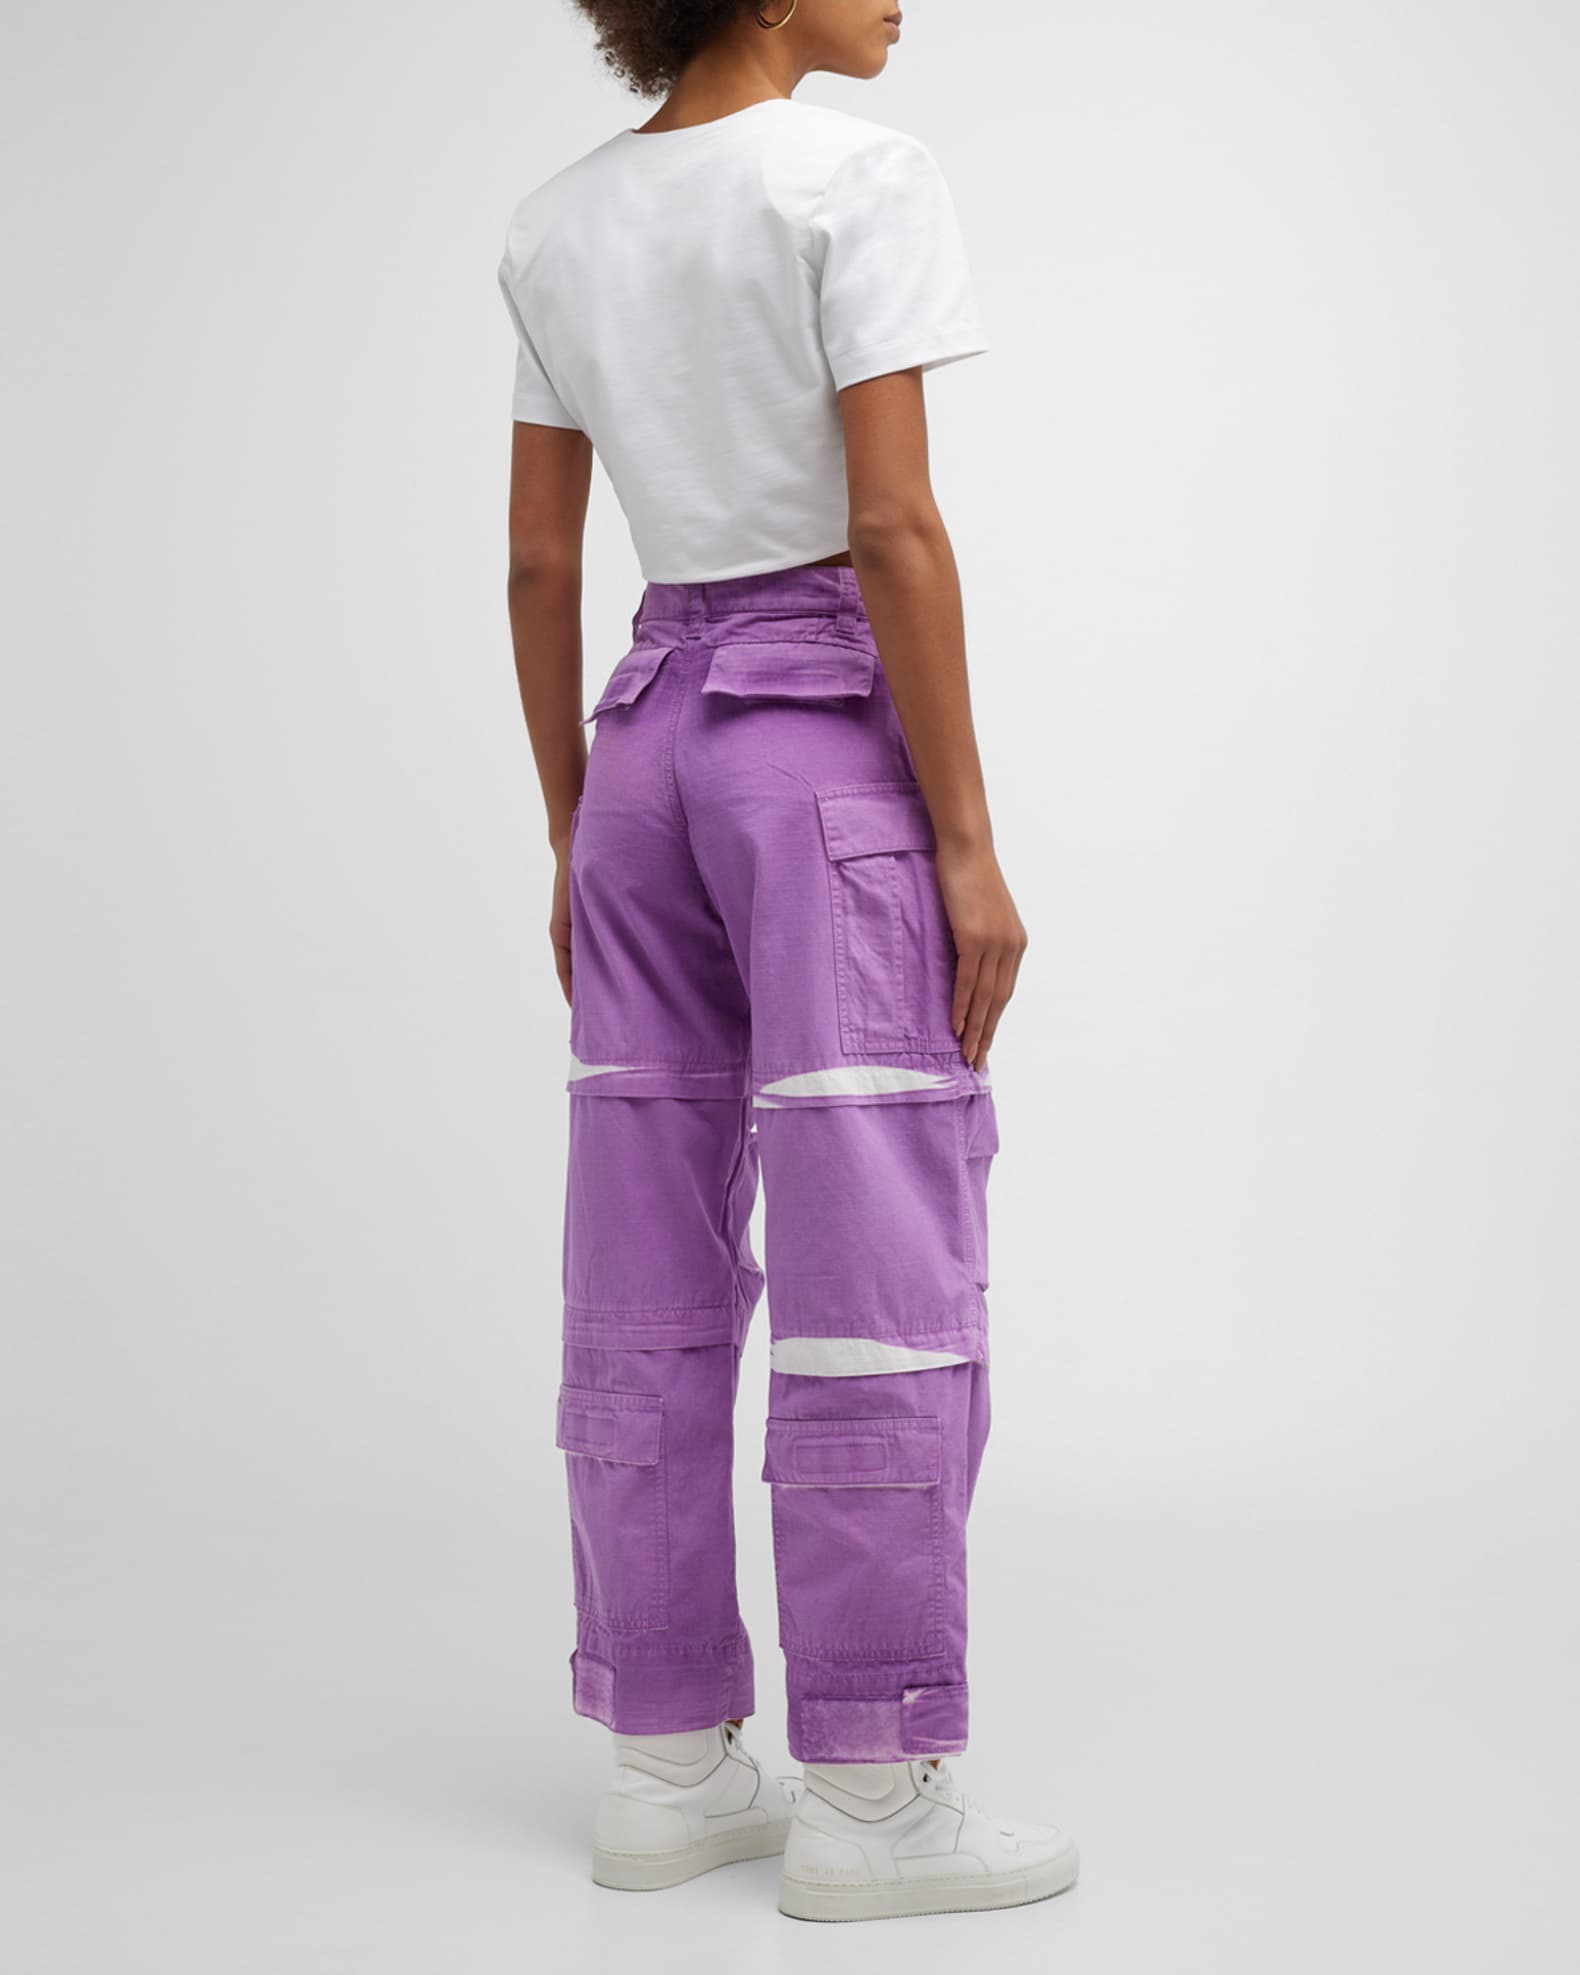 DARKPARK Julia Ripstop Cargo Pants | Neiman Marcus